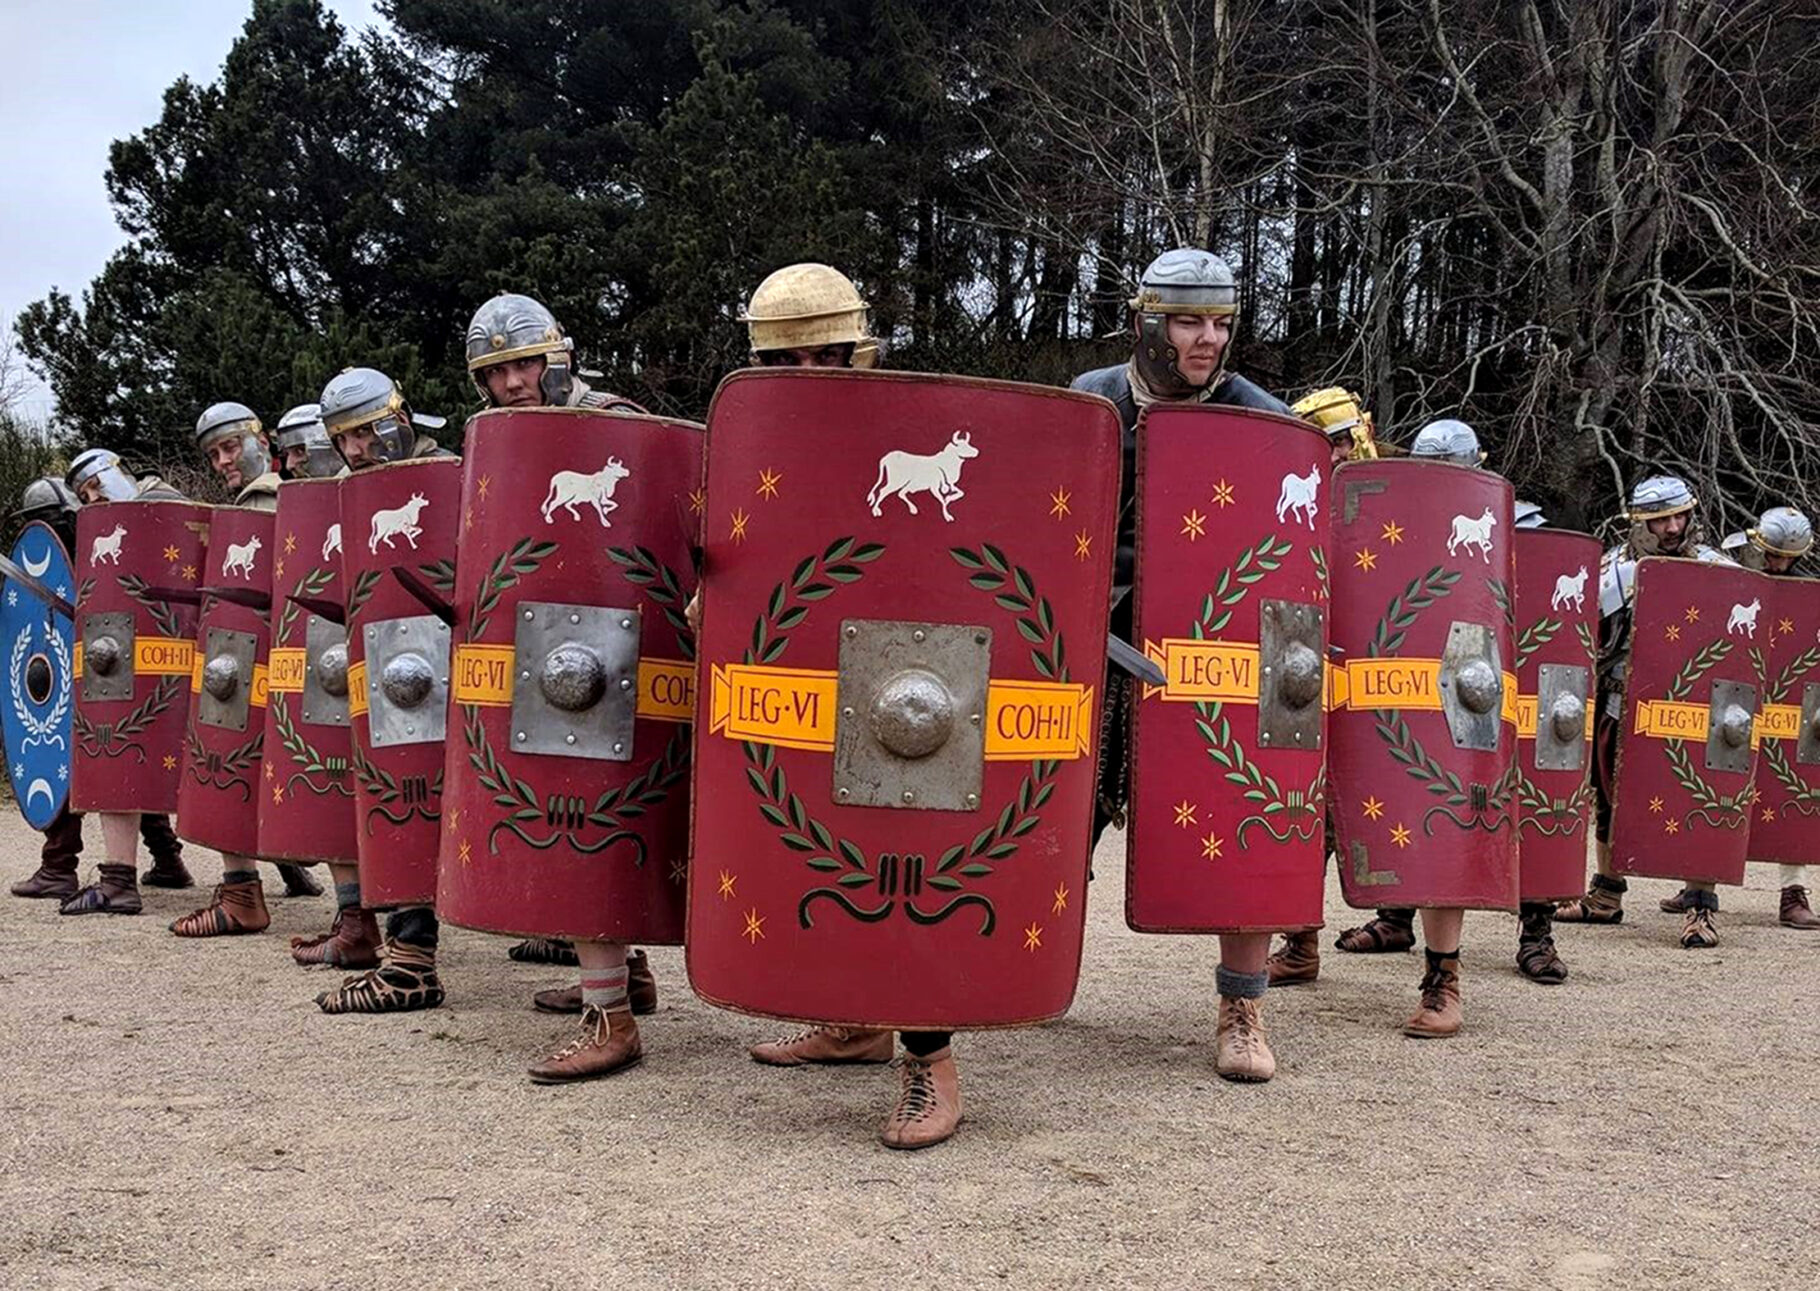 romerne kommer. åbning af udgravningen ved Hedegård